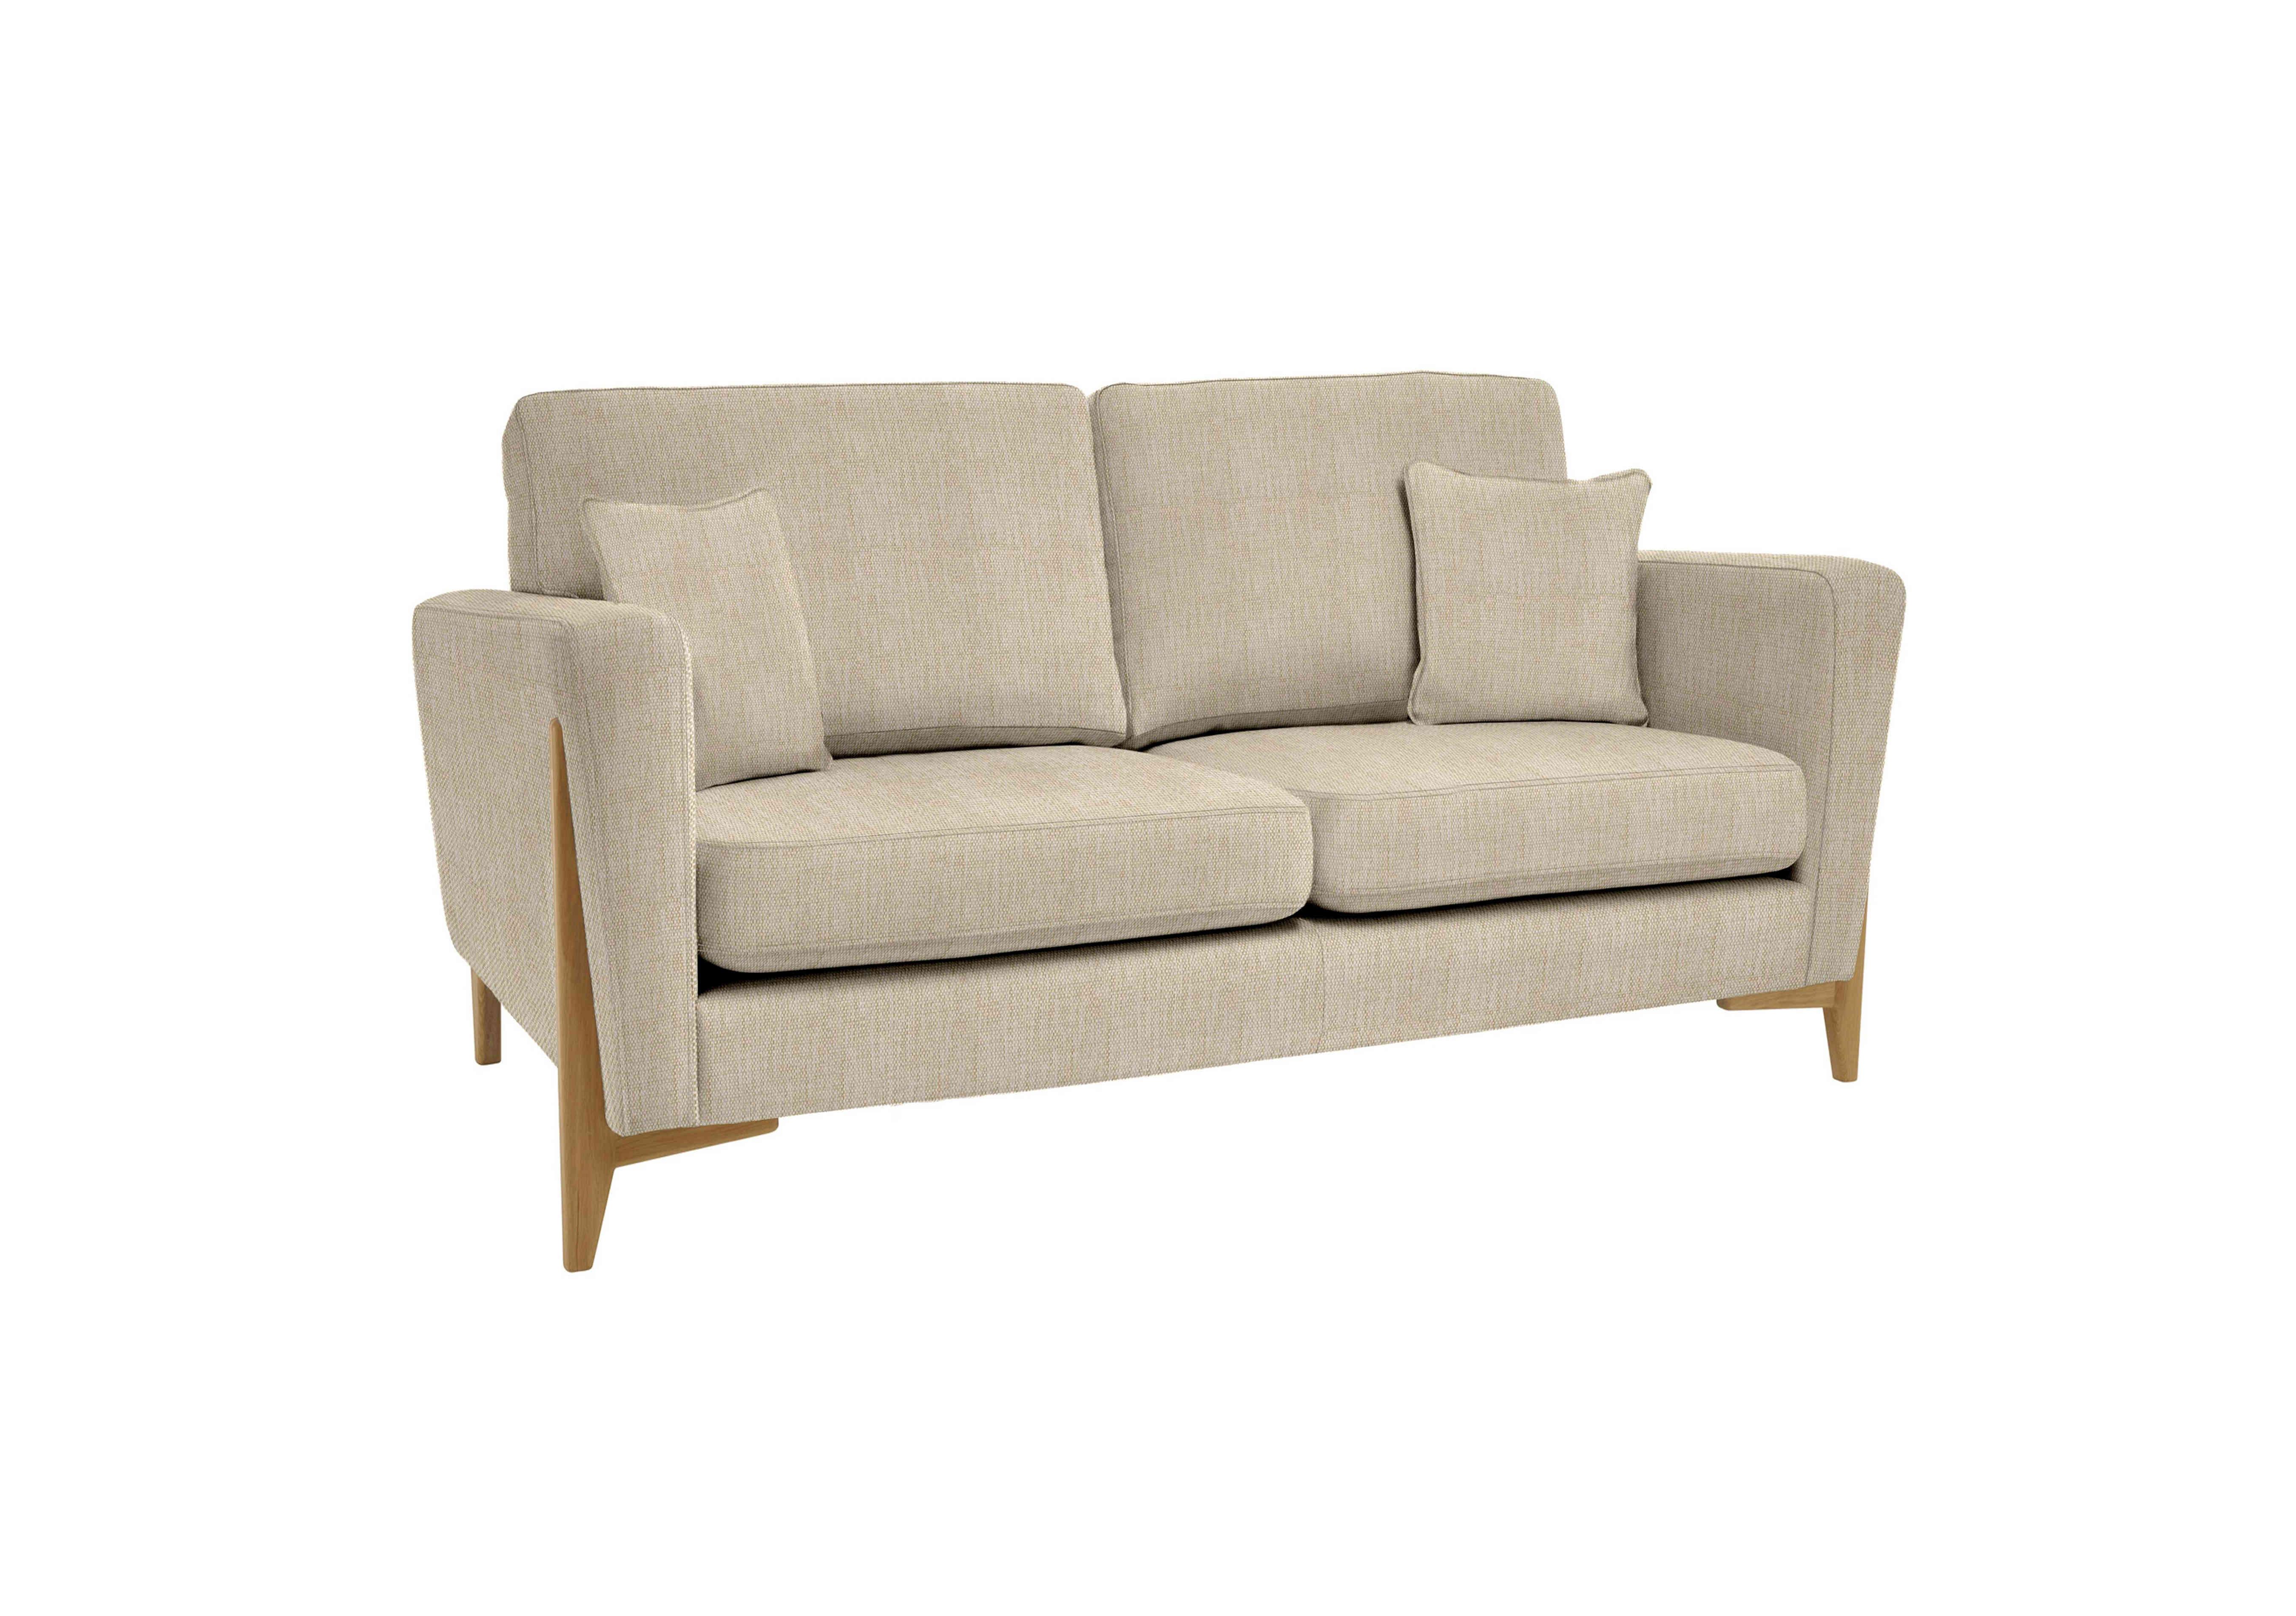 Marinello Small Fabric Sofa in T214 on Furniture Village